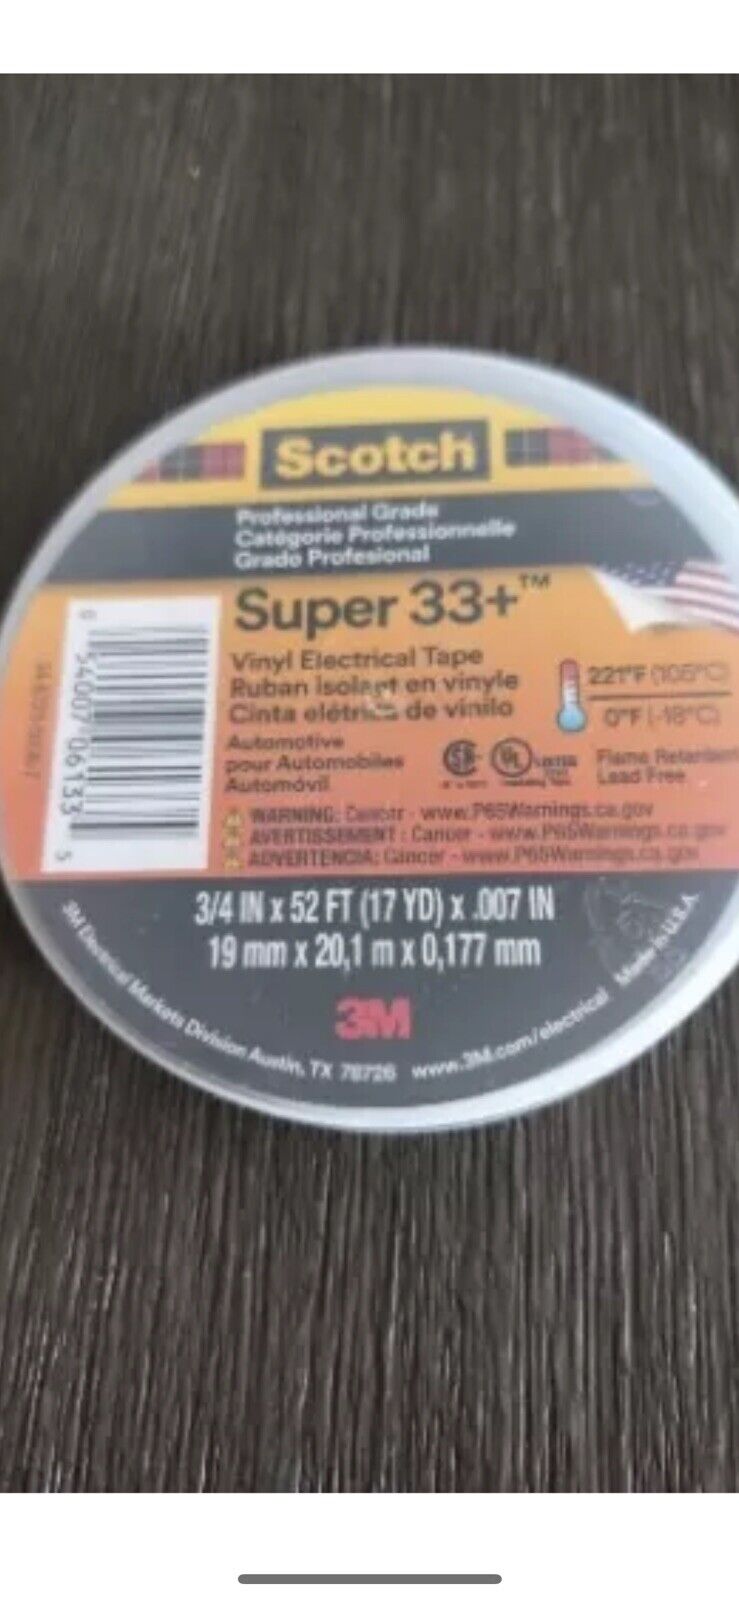 10 Rolls 3M Scotch Vinyl Electrical Tape Super-33, 3/4 in x 66 ft 22 yd